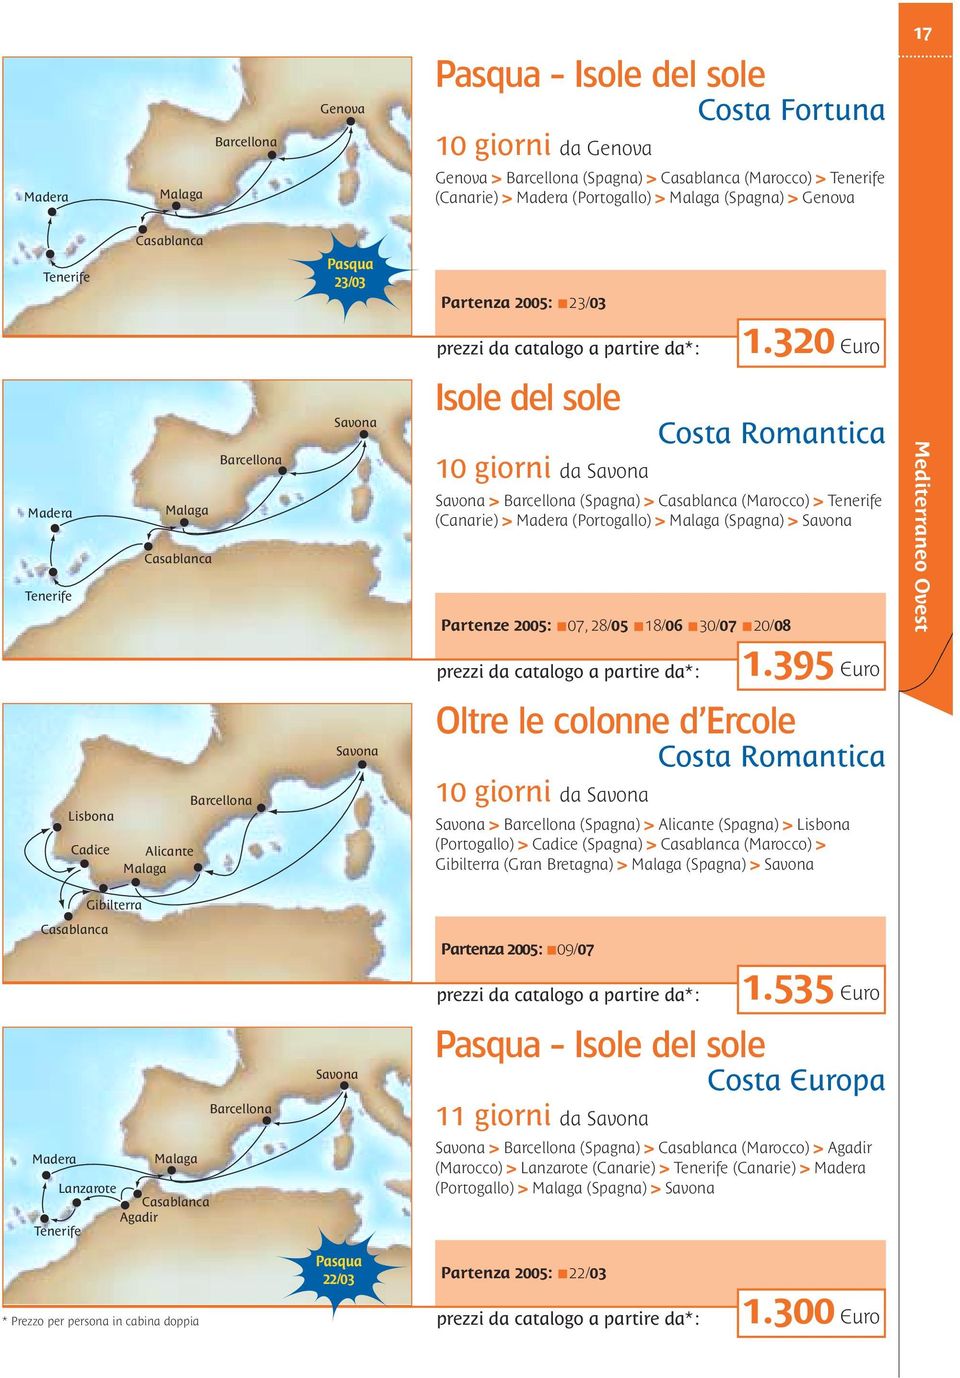 320 Euro Madera Tenerife Barcellona Malaga Casablanca Isole del sole 10 giorni da Costa Romantica > Barcellona (Spagna) > Casablanca (Marocco) > Tenerife (Canarie) > Madera (Portogallo) > Malaga